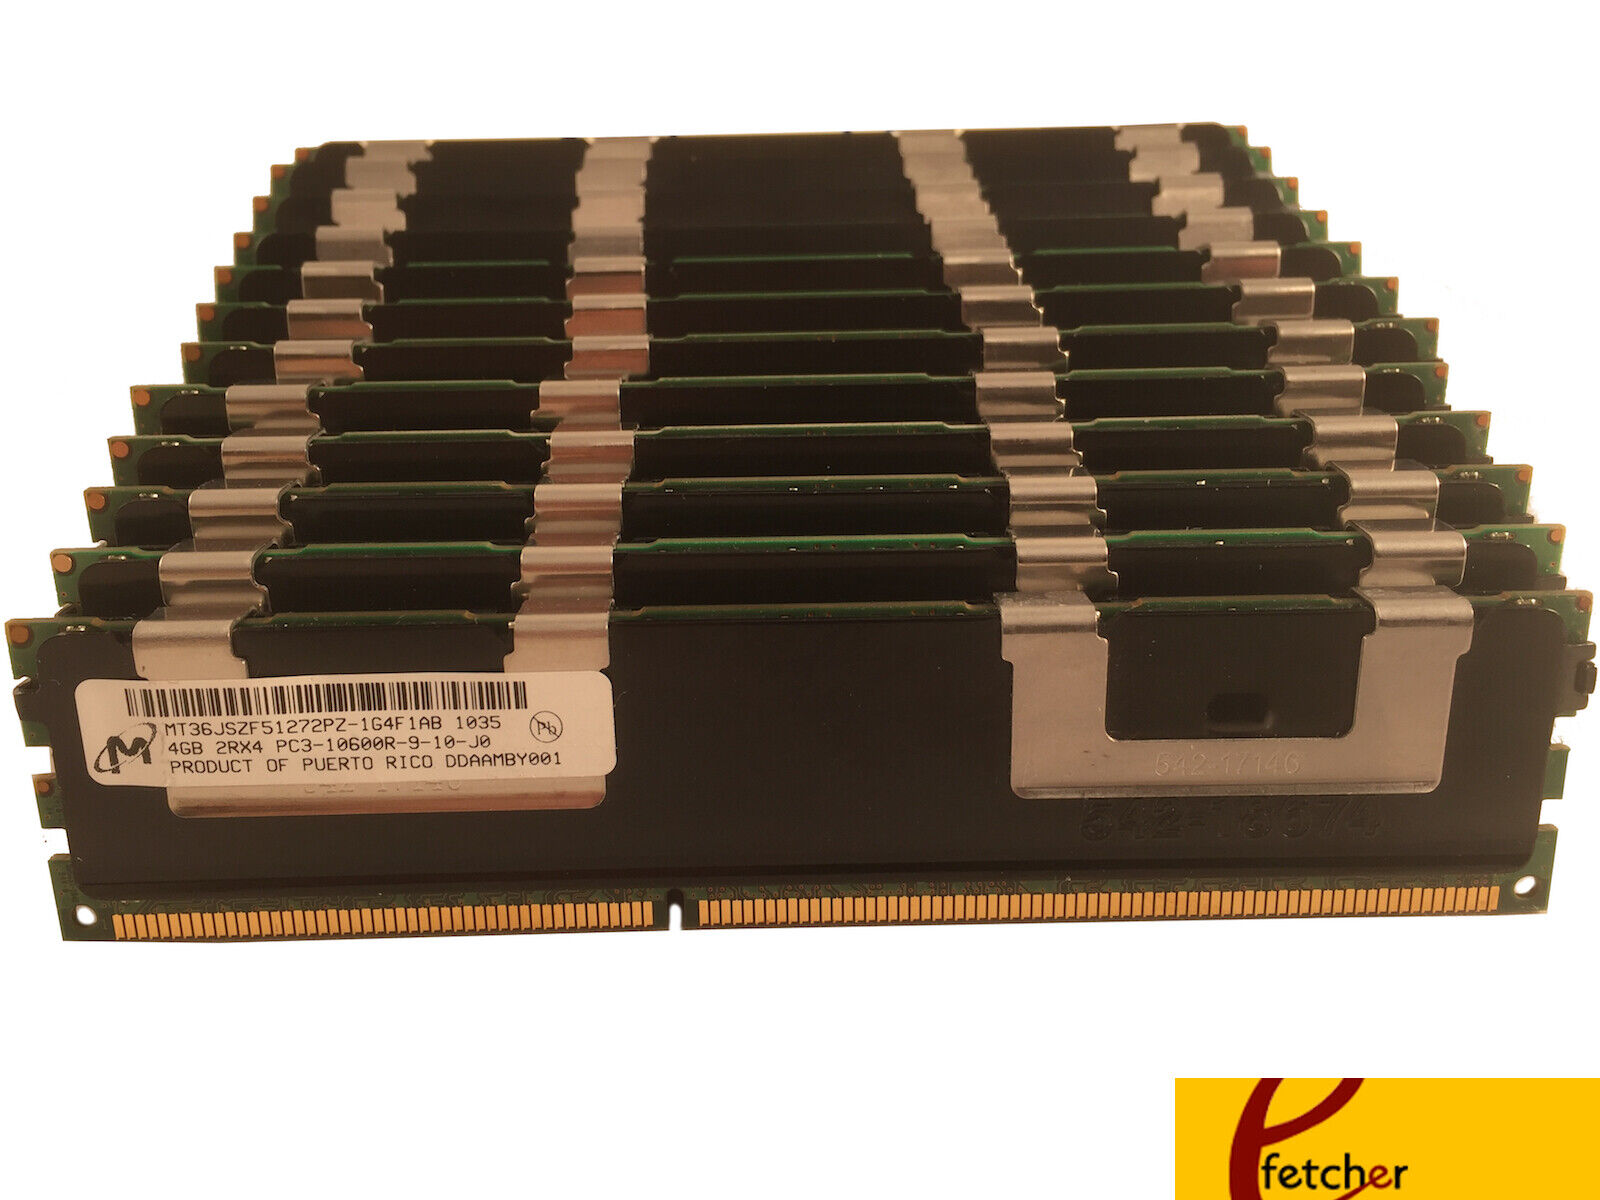 36GB (9X4GB) DDR3 ECC REG. MEMORY FOR DELL PRECISION WORKSTATION T5500, T7500